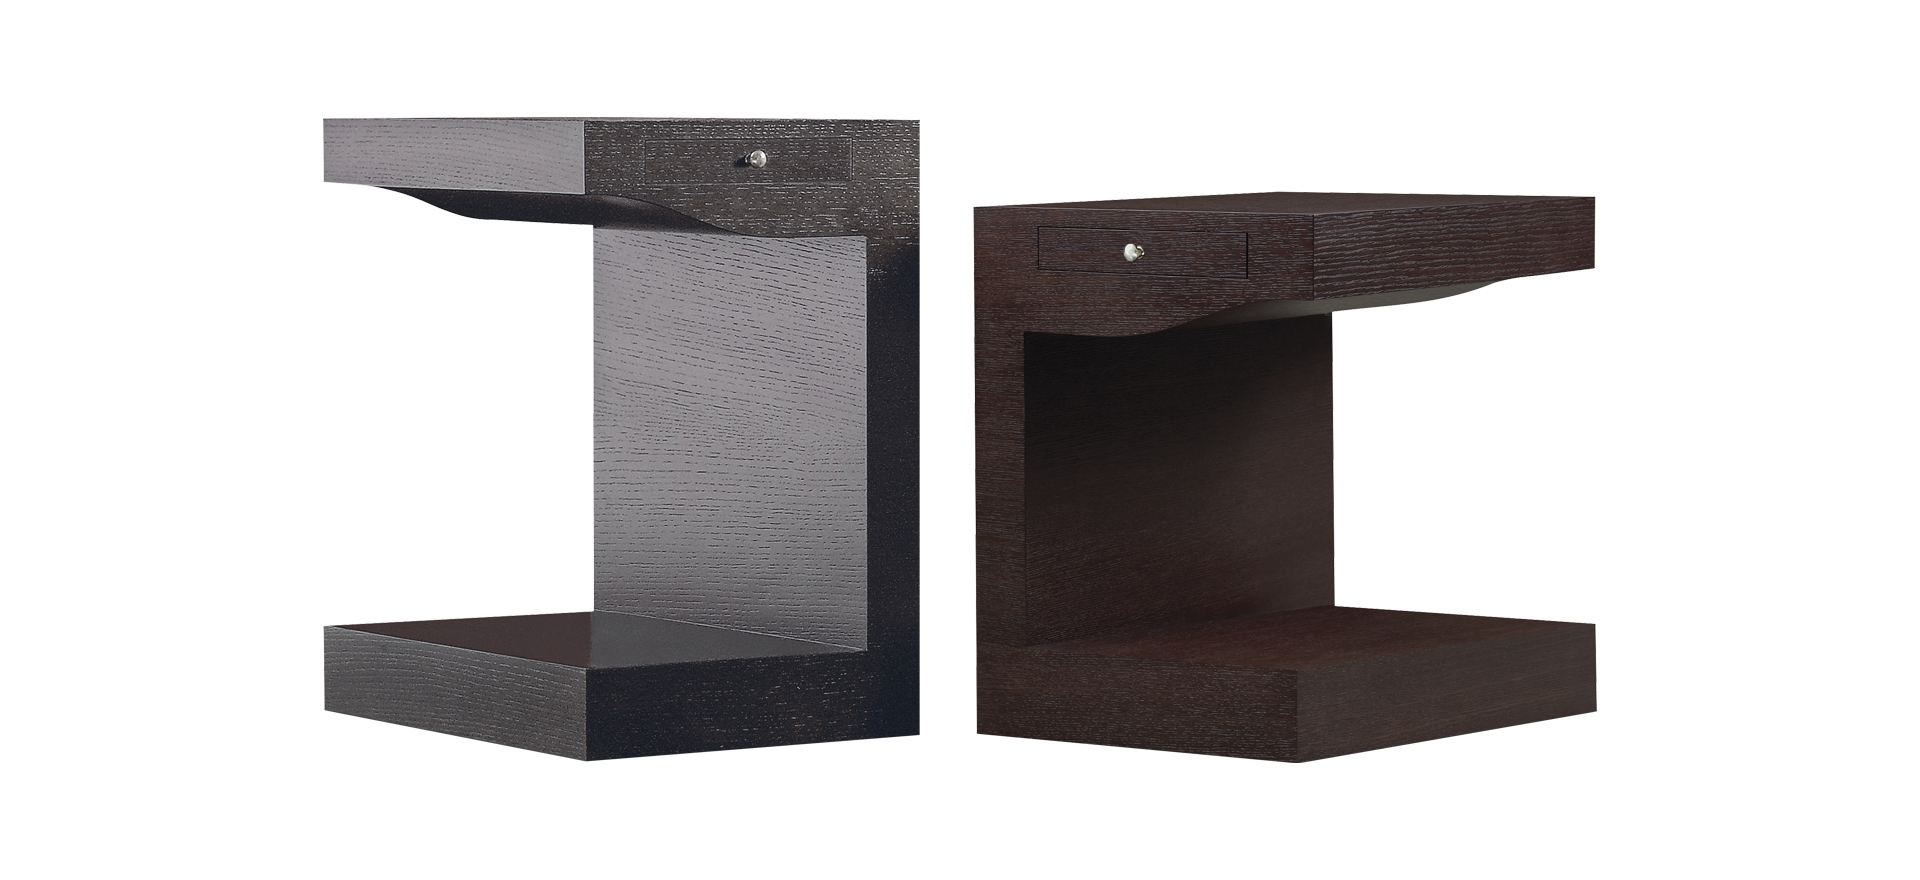 „Zoe“ ist ein rollbarer Nachttisch aus Holz mit Bronzeknauf, aus dem Katalog von Promemoria | Promemoria